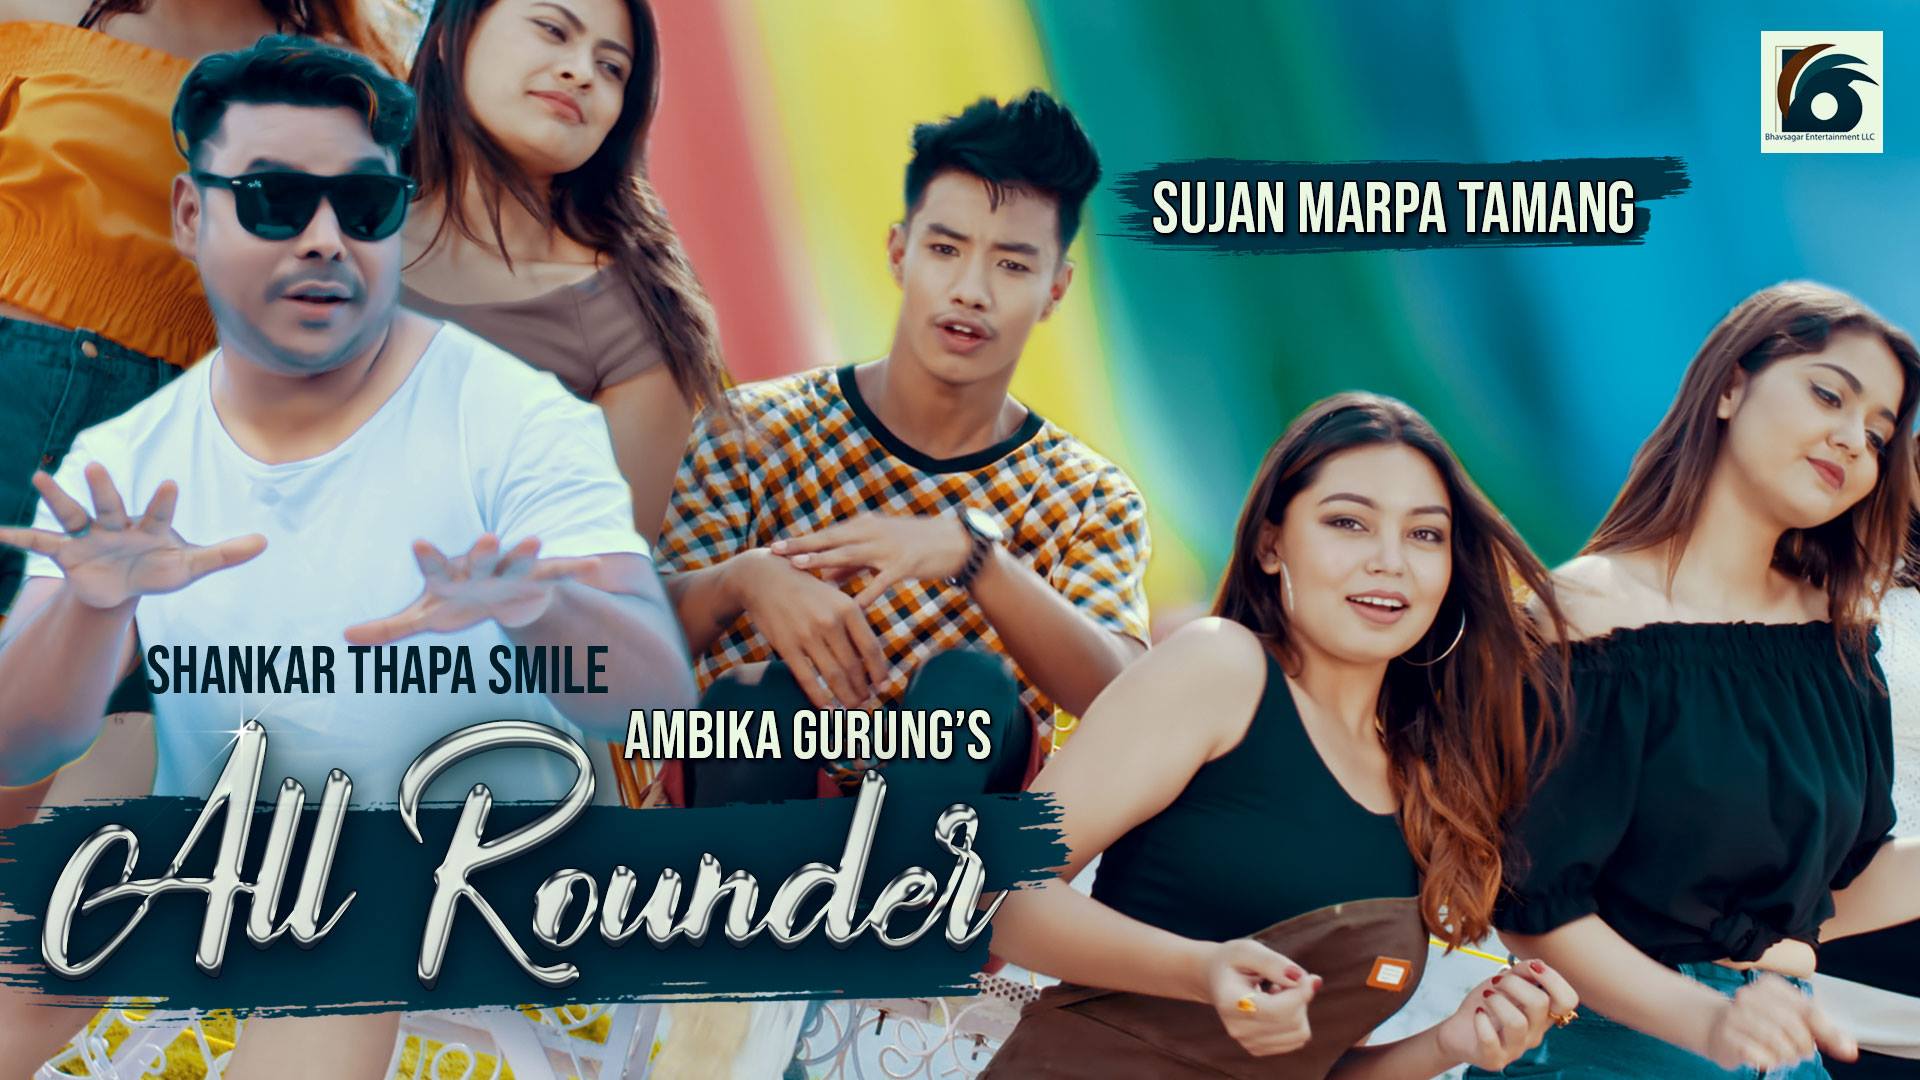 गायक शंकर थापा स्माइलको 'अल राउण्डर' सार्बजनिक(भिडियो सहित)